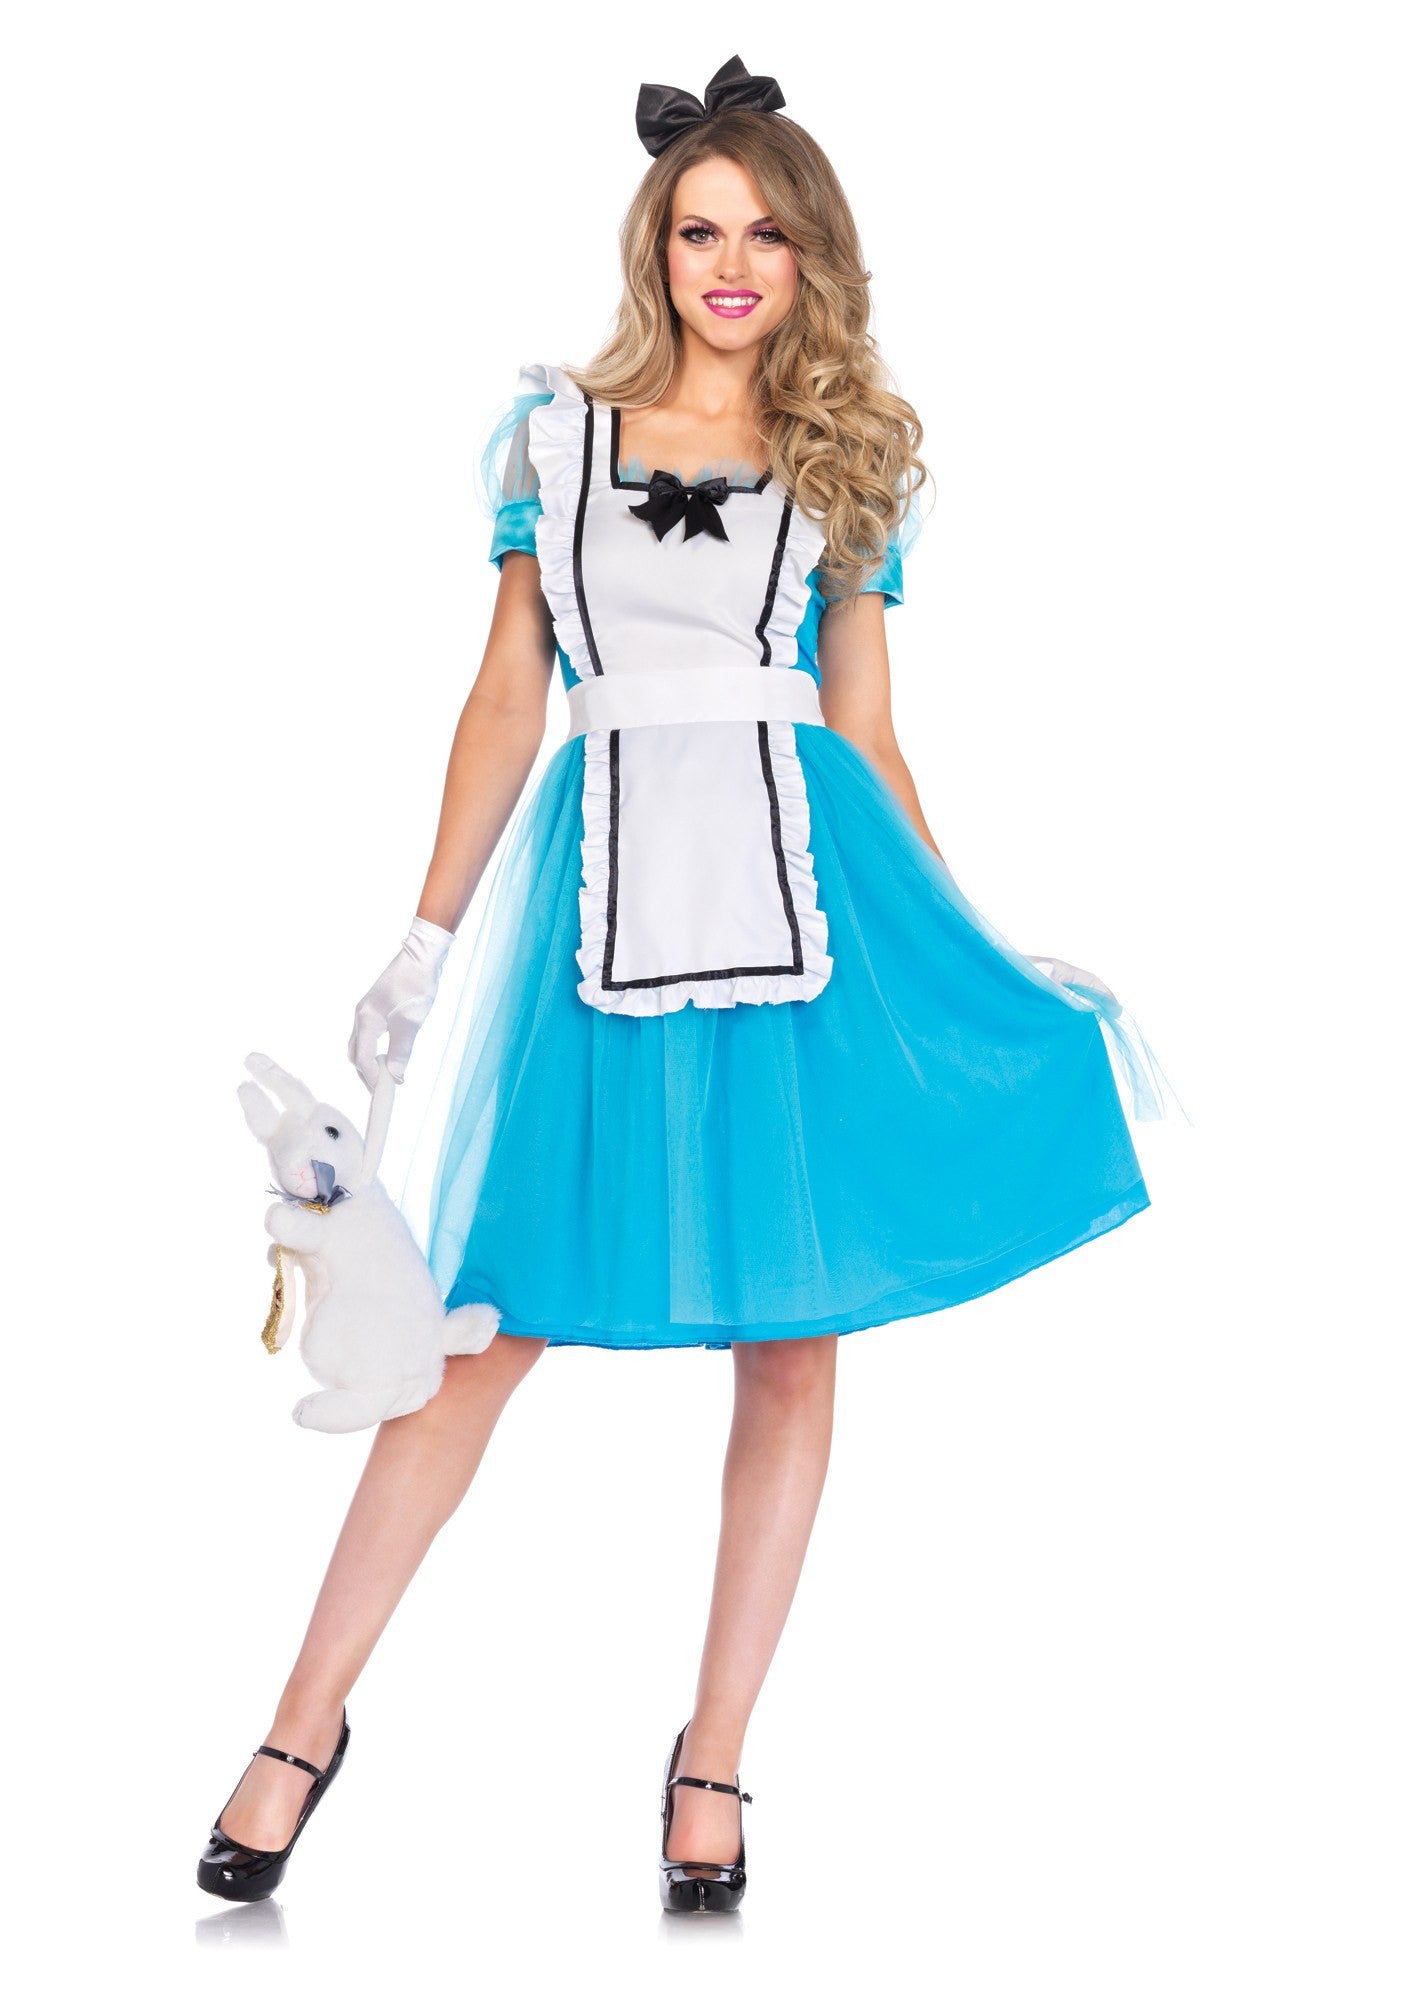 Costume - Classic Alice Costume